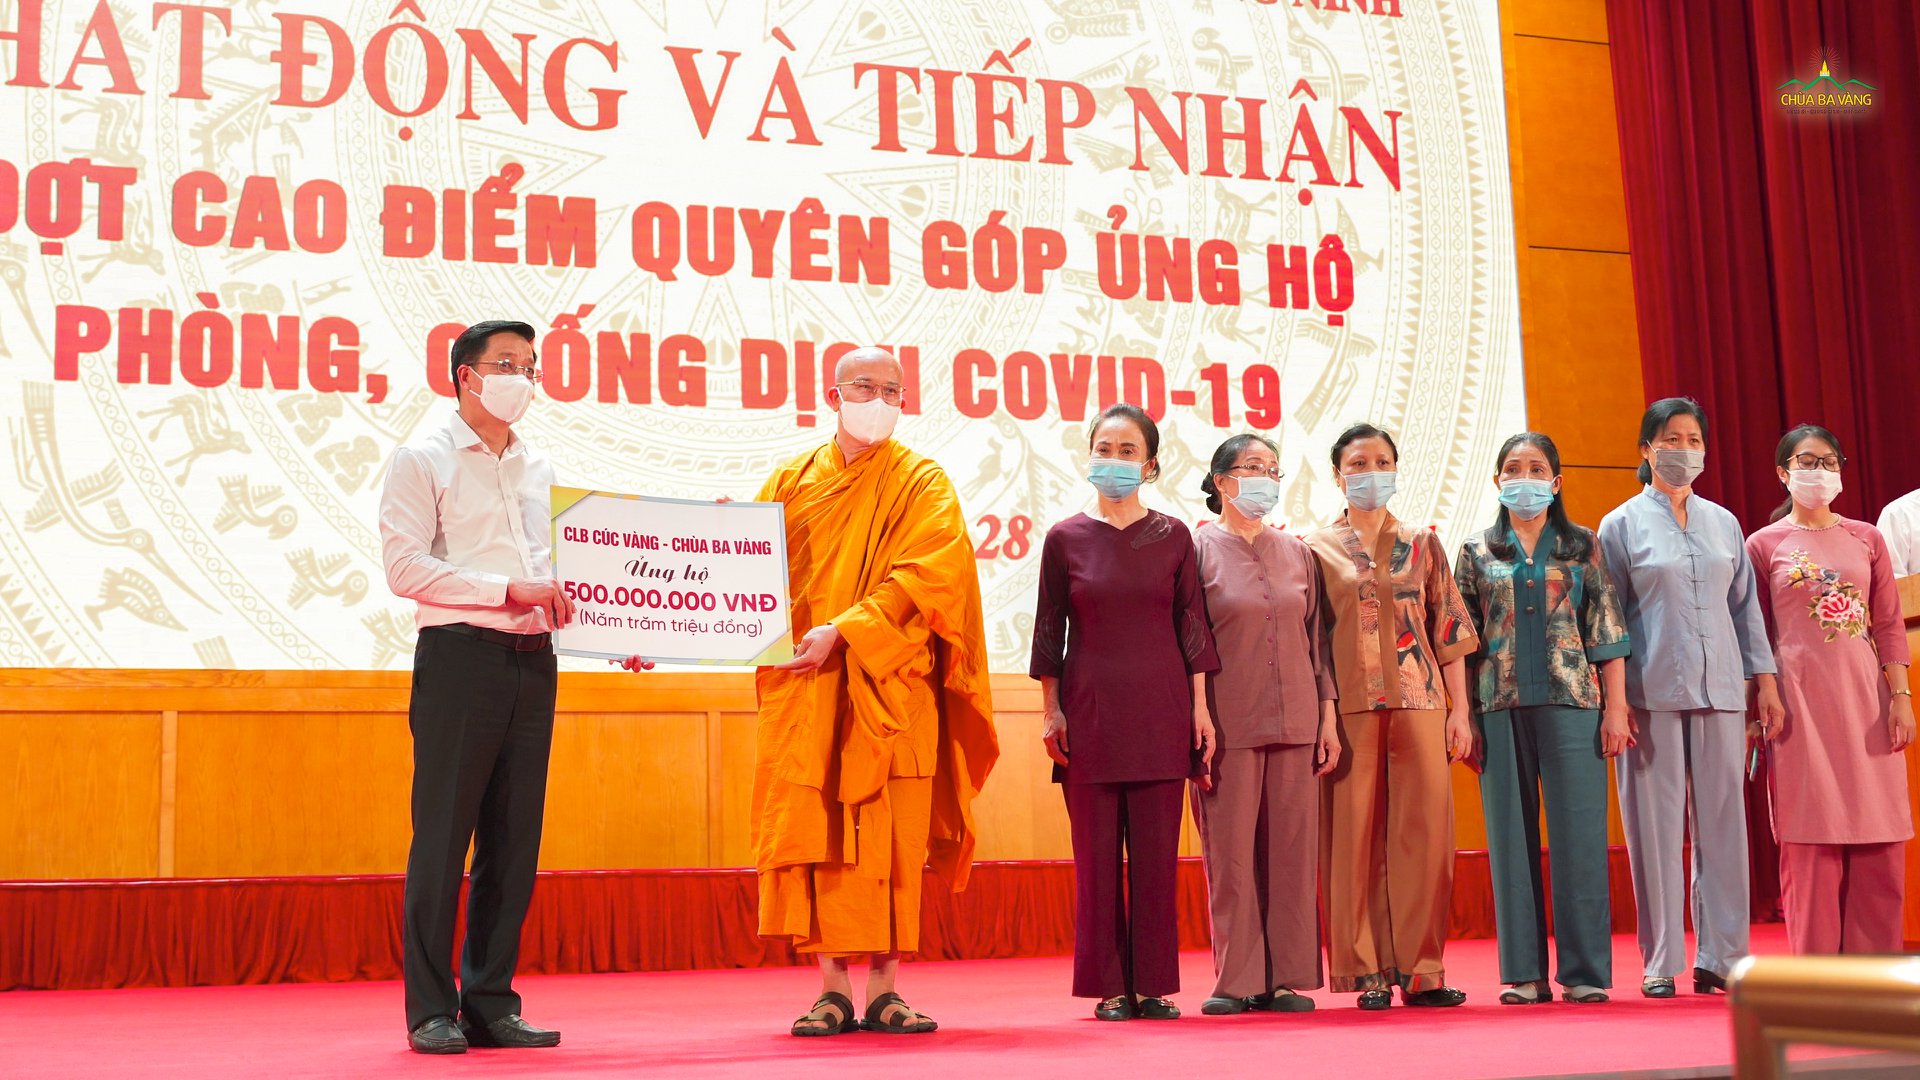 Phật tử CLB Cúc Vàng - Tập Tu Lục Hòa, chùa Ba Vàng ủng hộ, đóng góp công cuộc phòng, chống dịch bệnh COVID-19 của tỉnh Quảng Ninh với số tịnh tài là 500.000.000 triệu đồng (Năm trăm triệu đồng)  